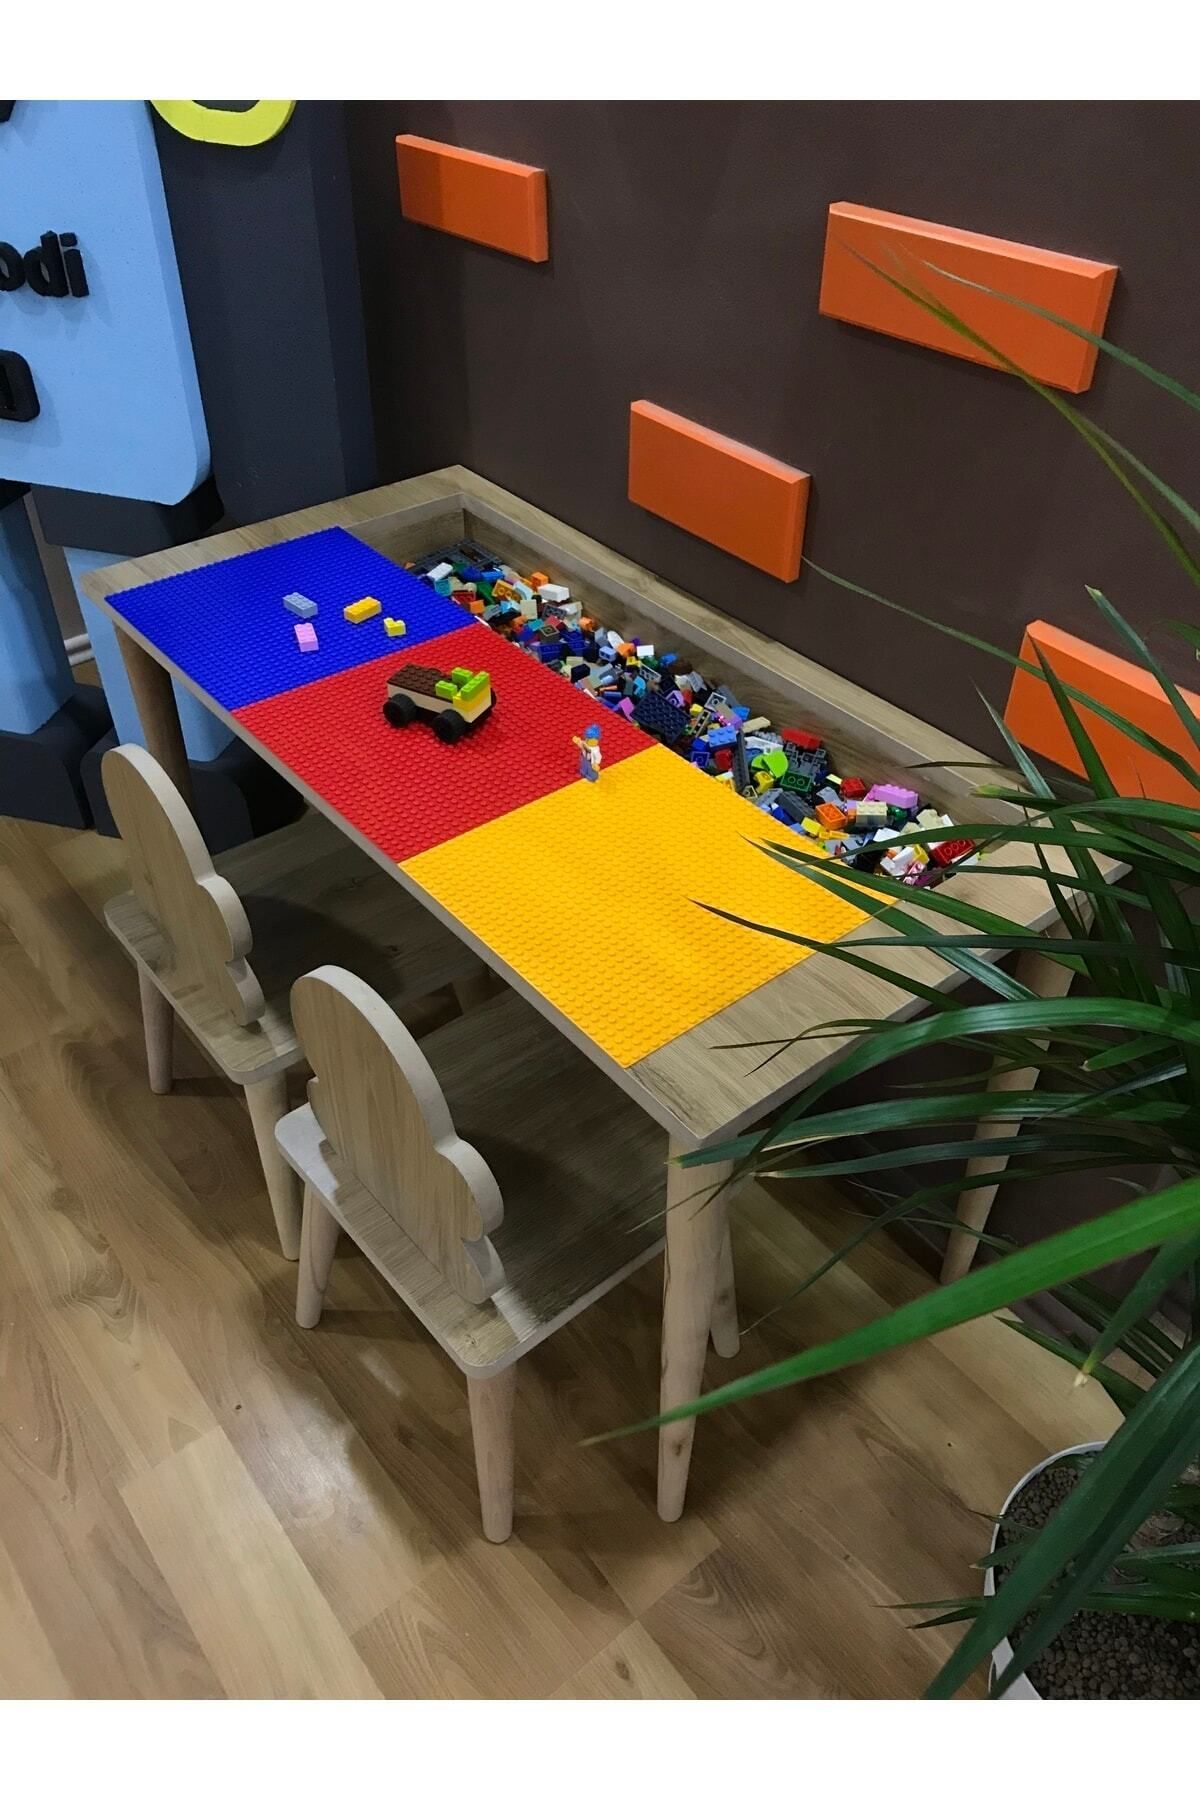 GizemDekorasyon Lego Masası